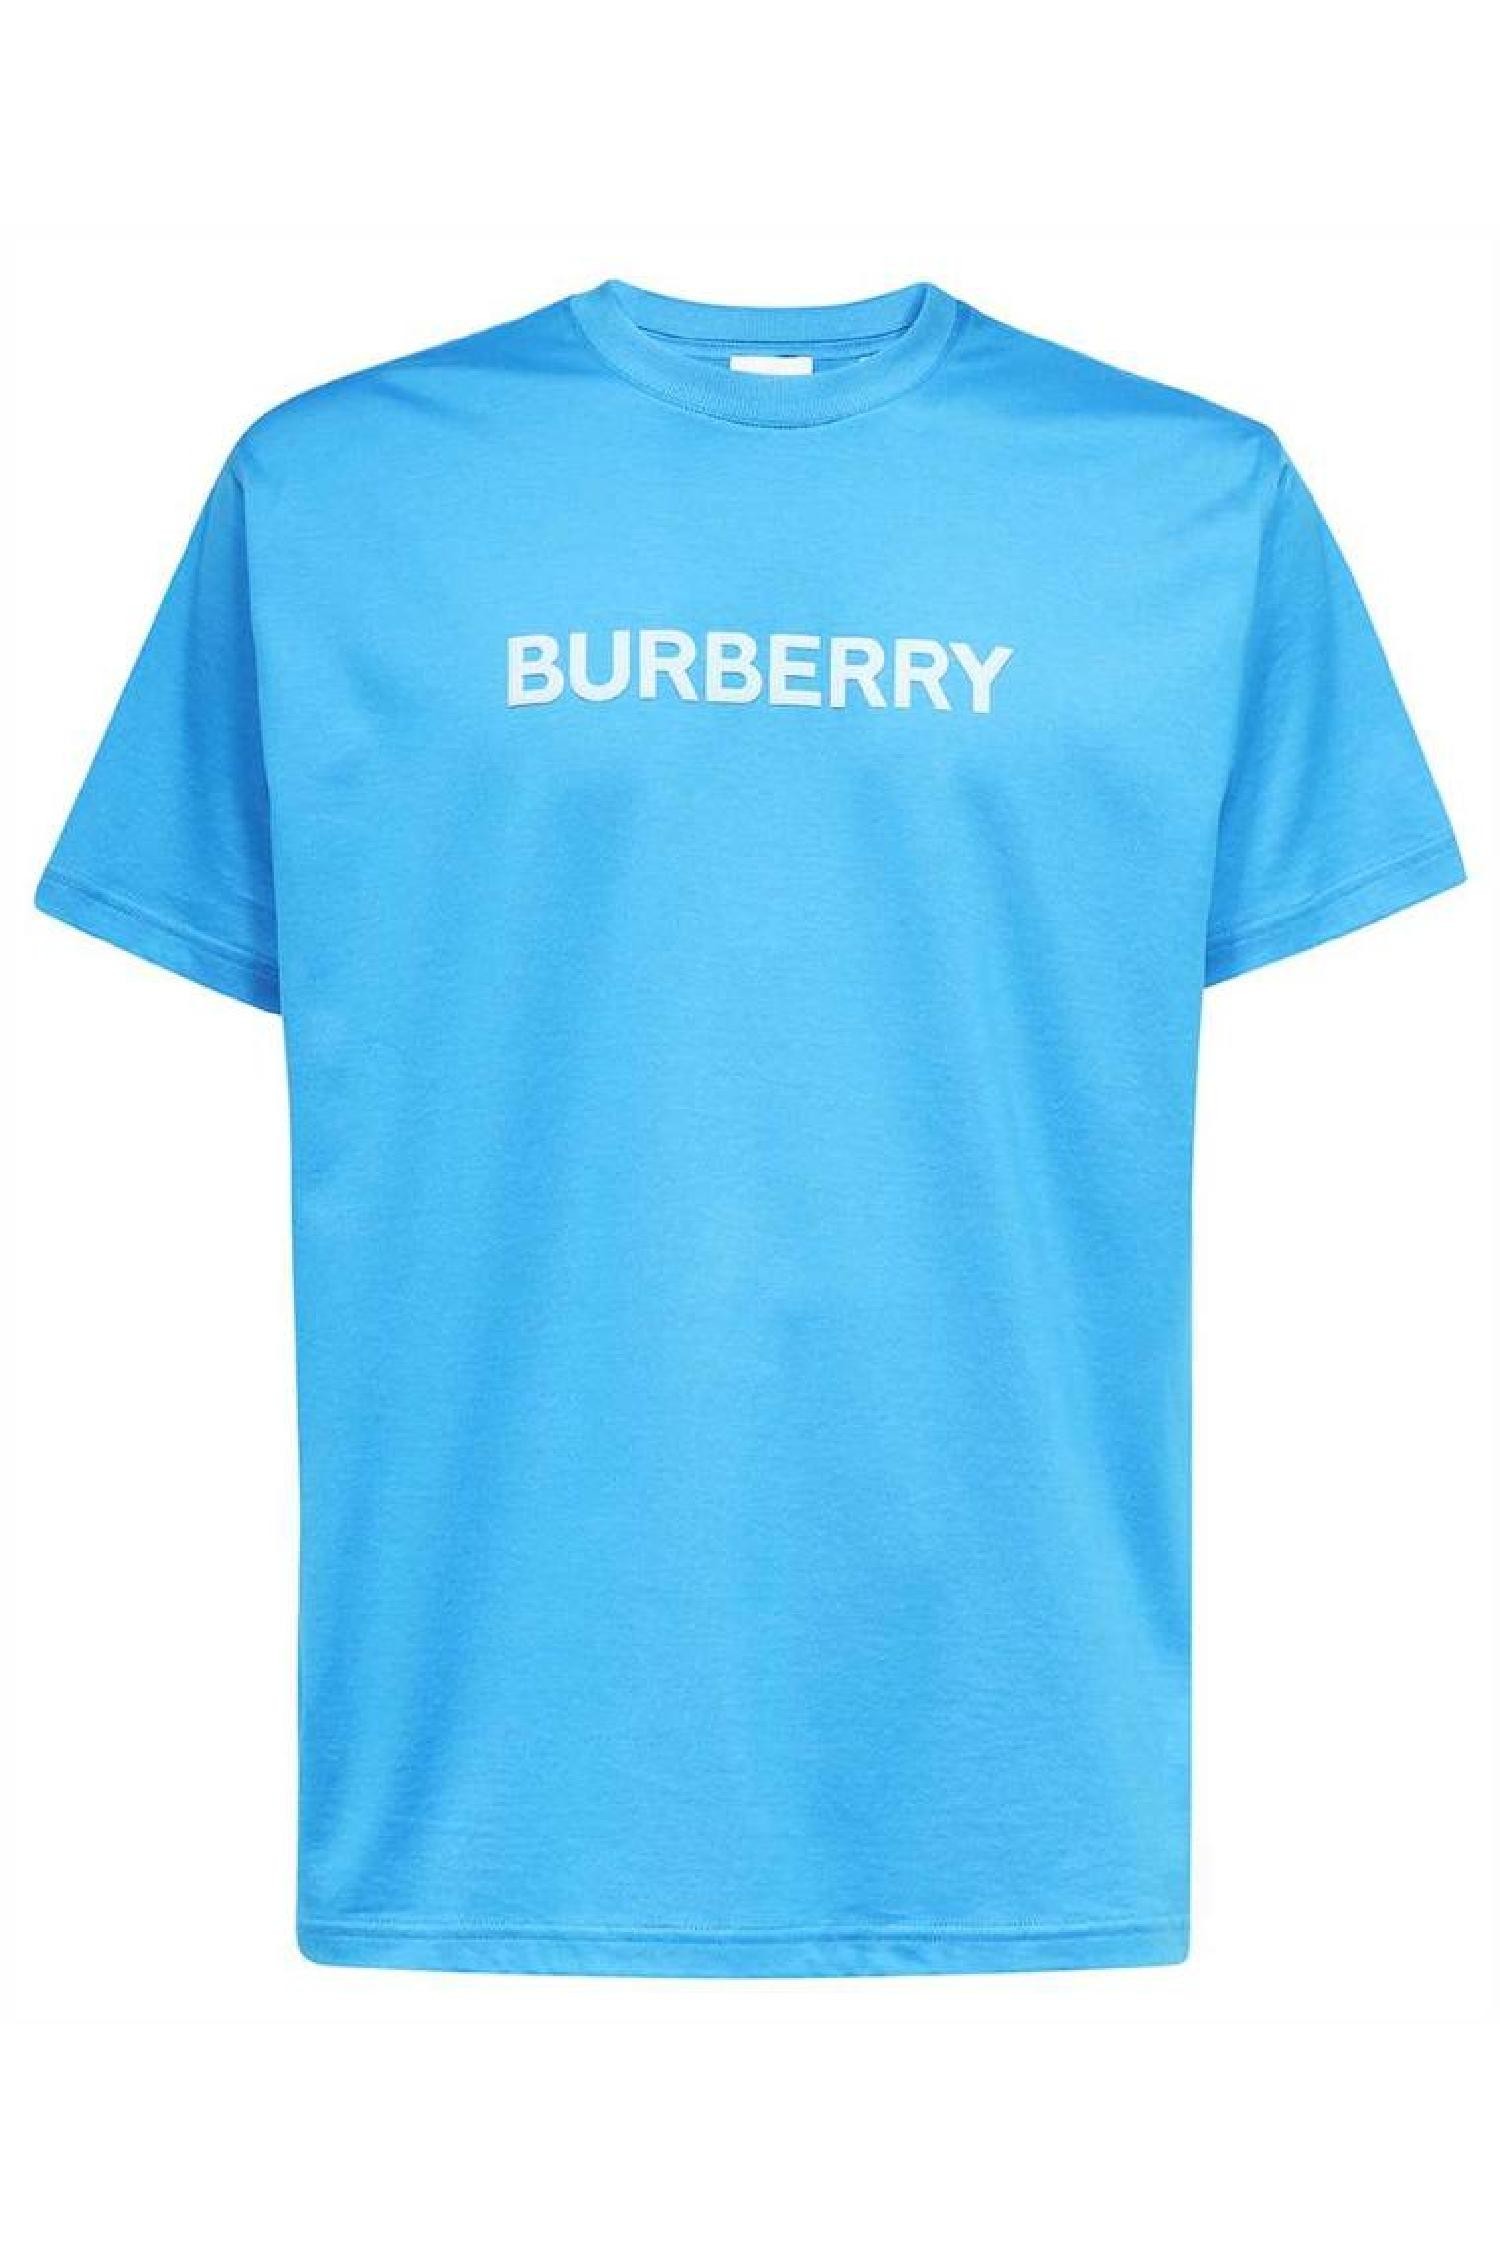 버버리 남성 티셔츠 Burberry 8065395 HARRISTON T shirt Blue_BURBERRY